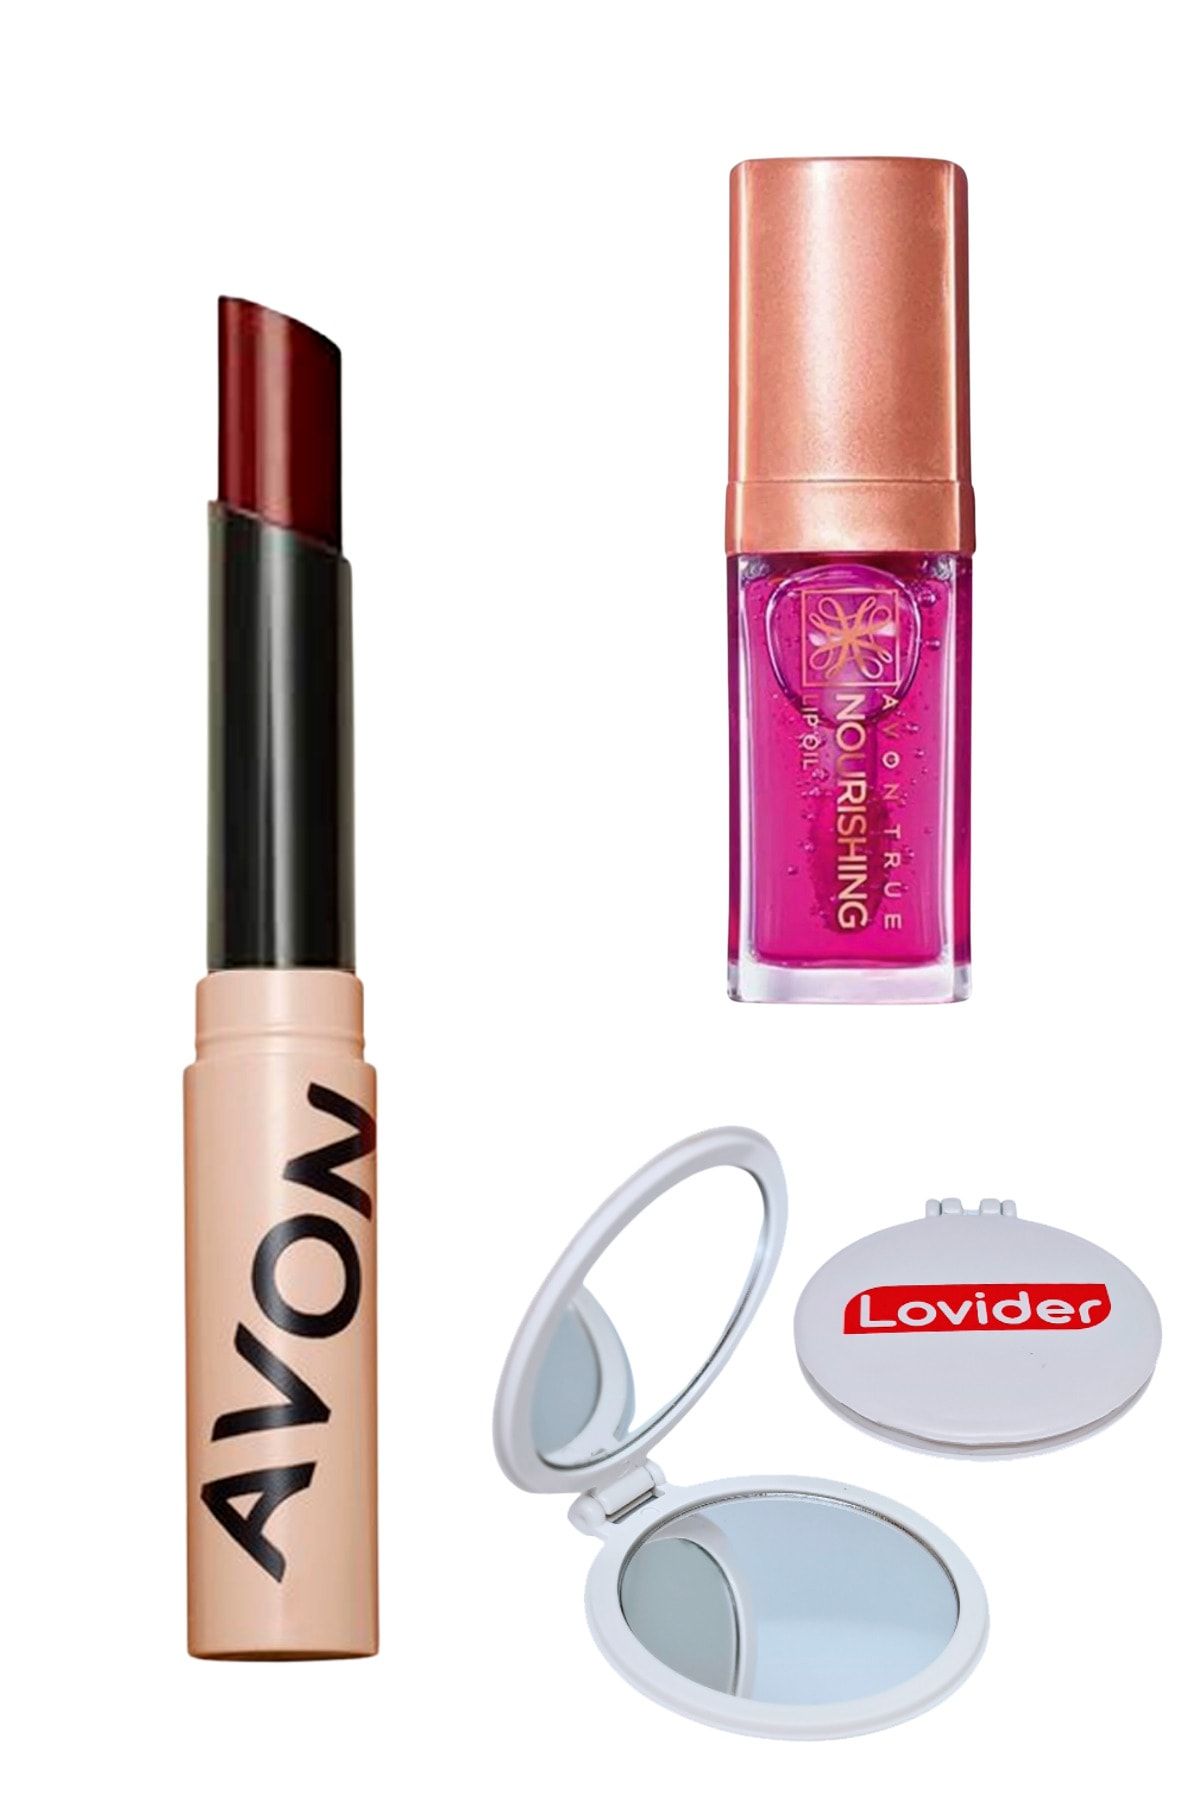 Avon Tinted Lip Balm Renkli Dudak Balmı Plum + Blossom Dudak Yağı + Lovider Cep Aynası Hediye